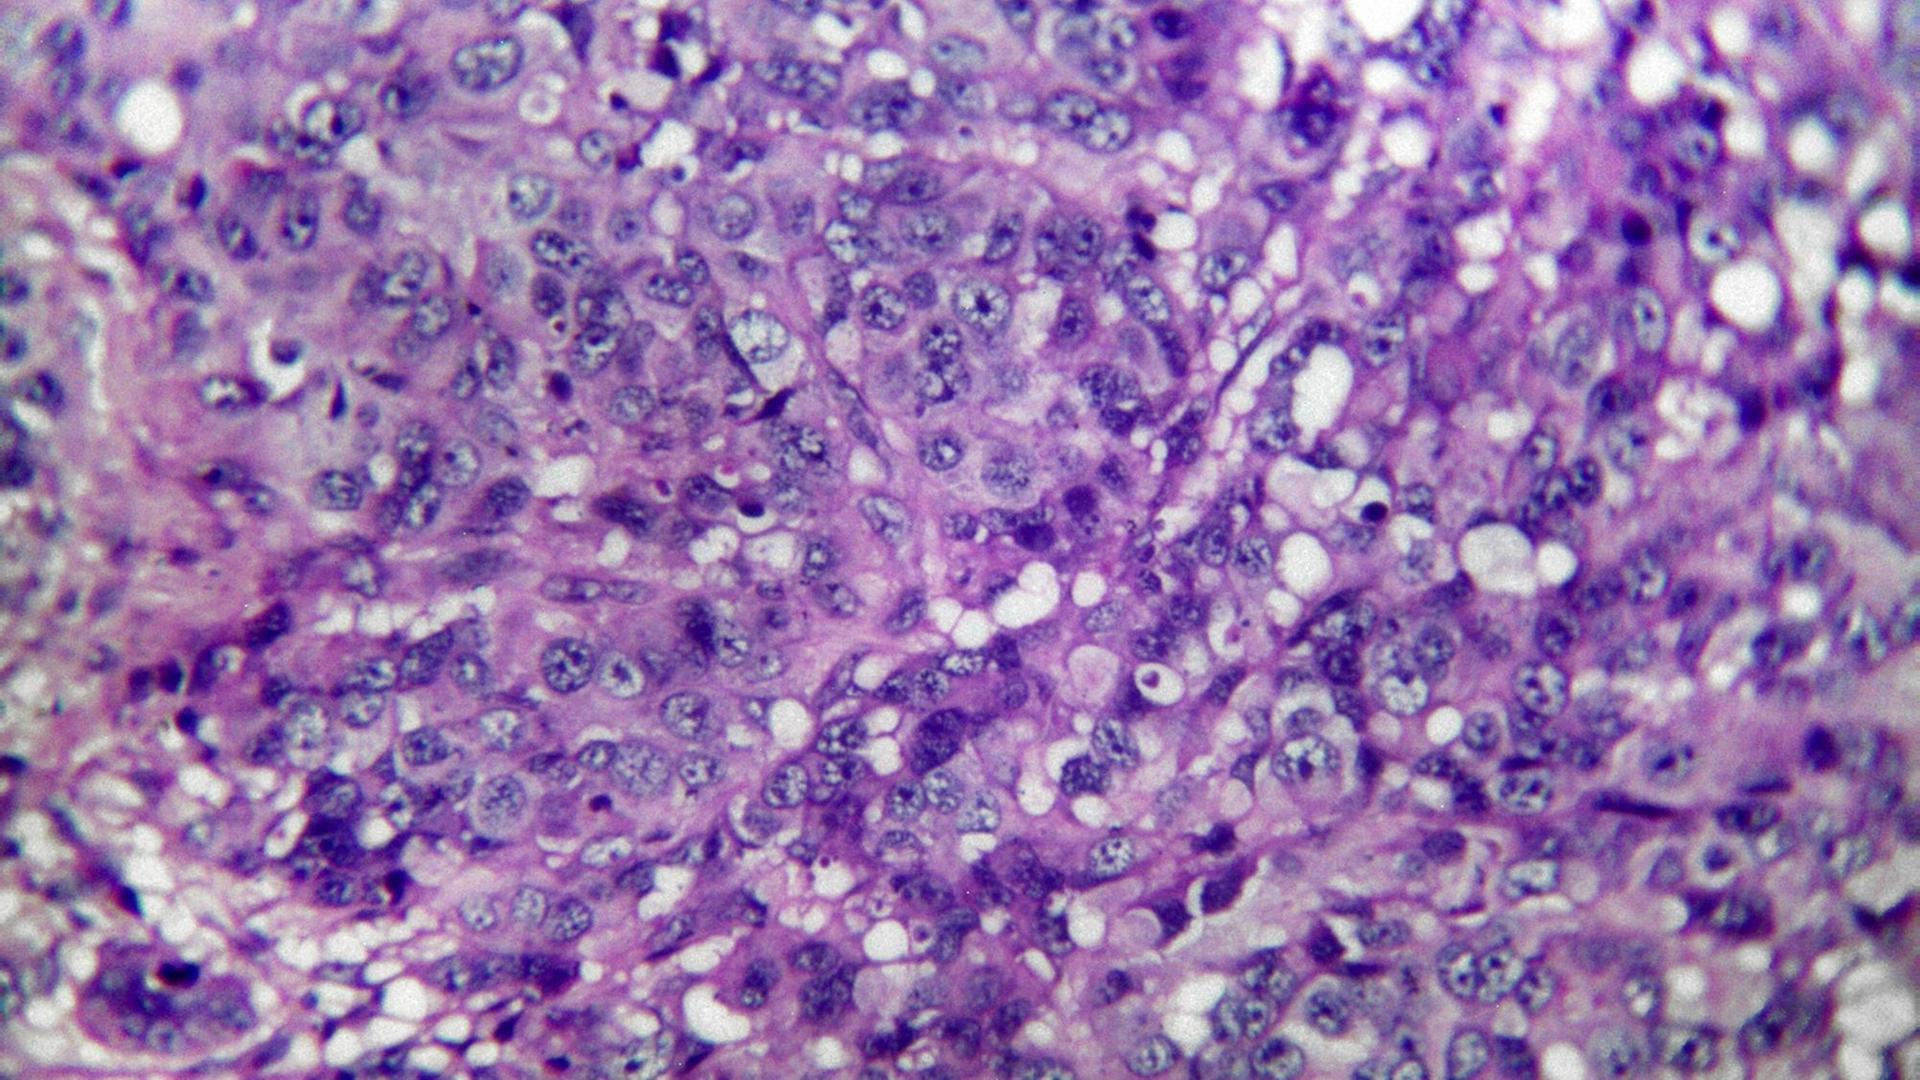 Gewebe eines Melanosarkoms der Haut, mikroskopischer Schnitt, 400-fache Vergrößerung